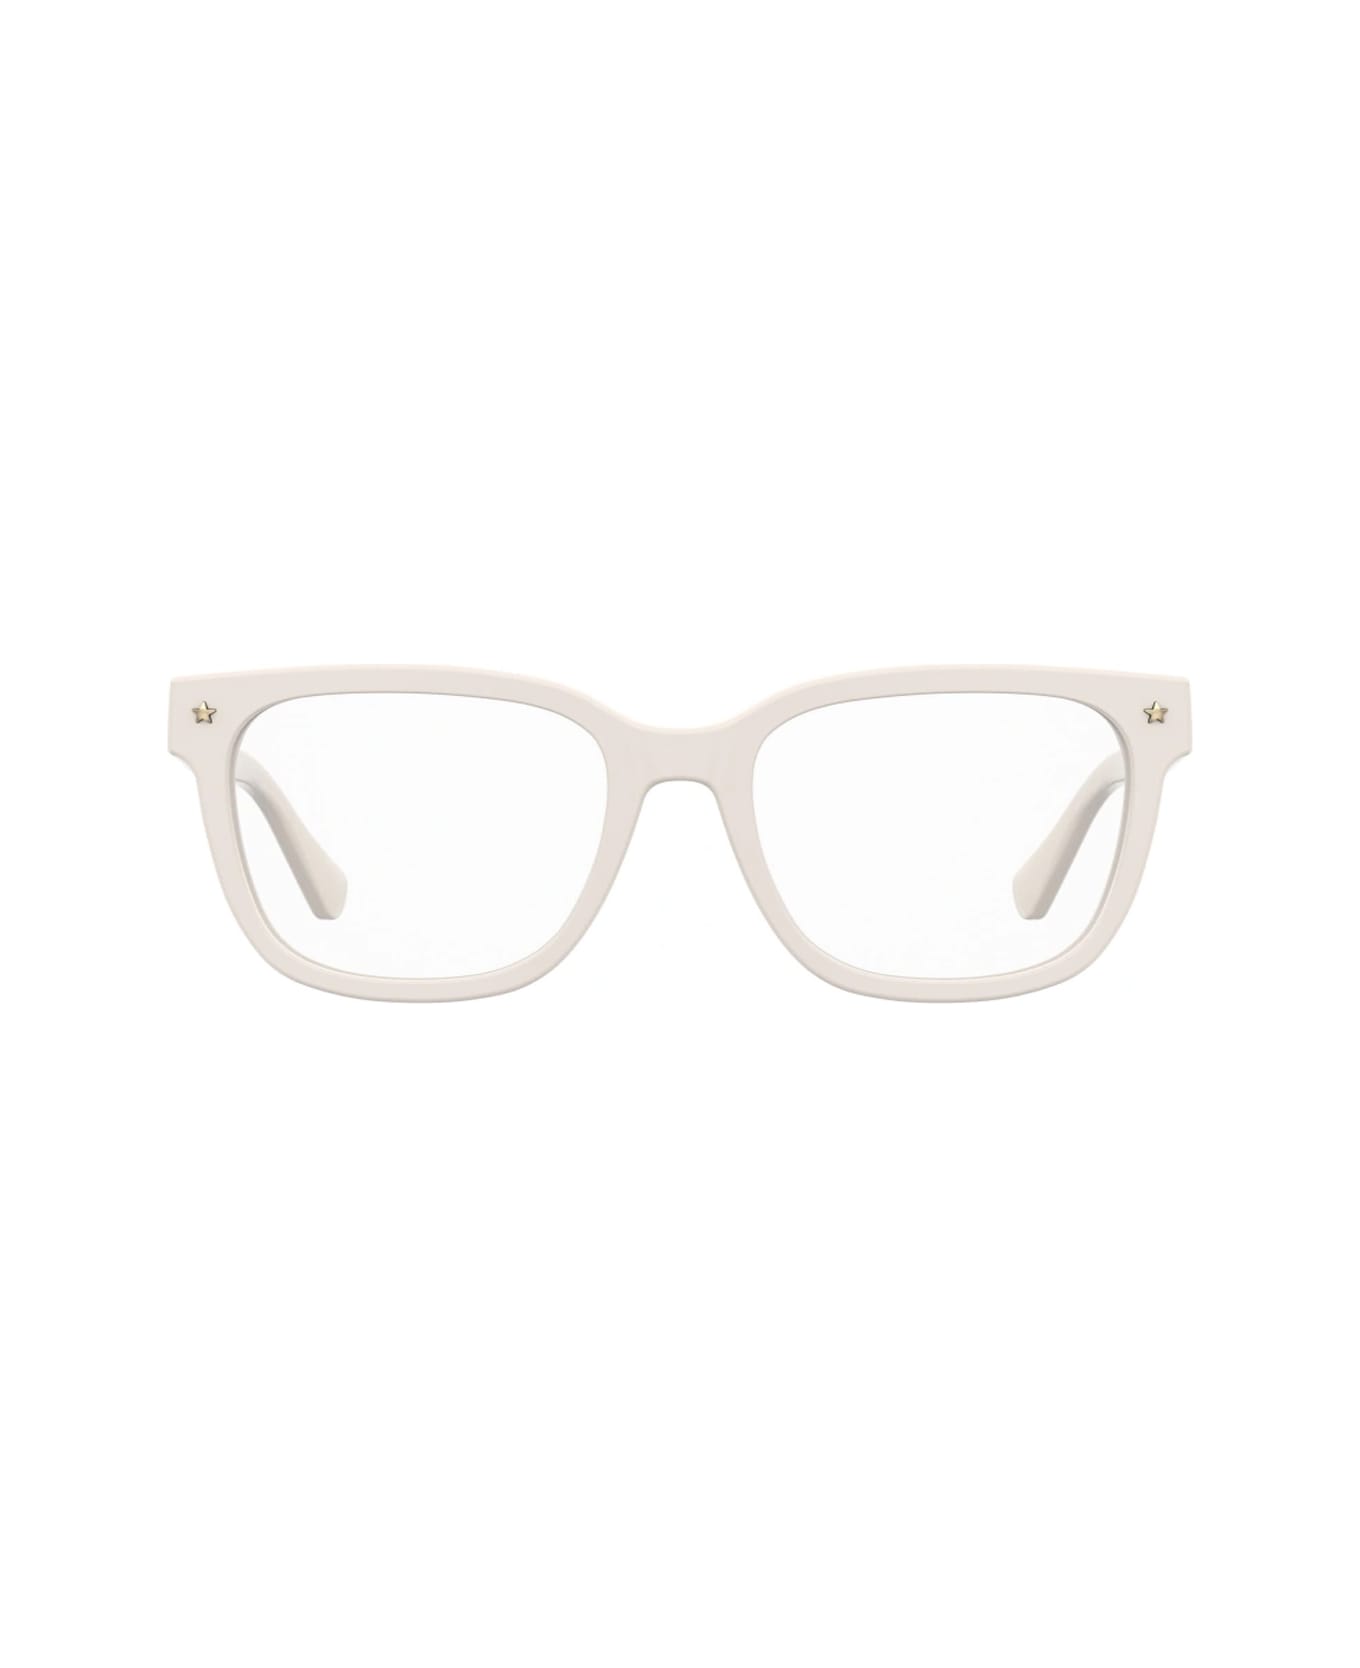 Chiara Ferragni Cf 7027 Vk6/18 White Glasses - Bianco